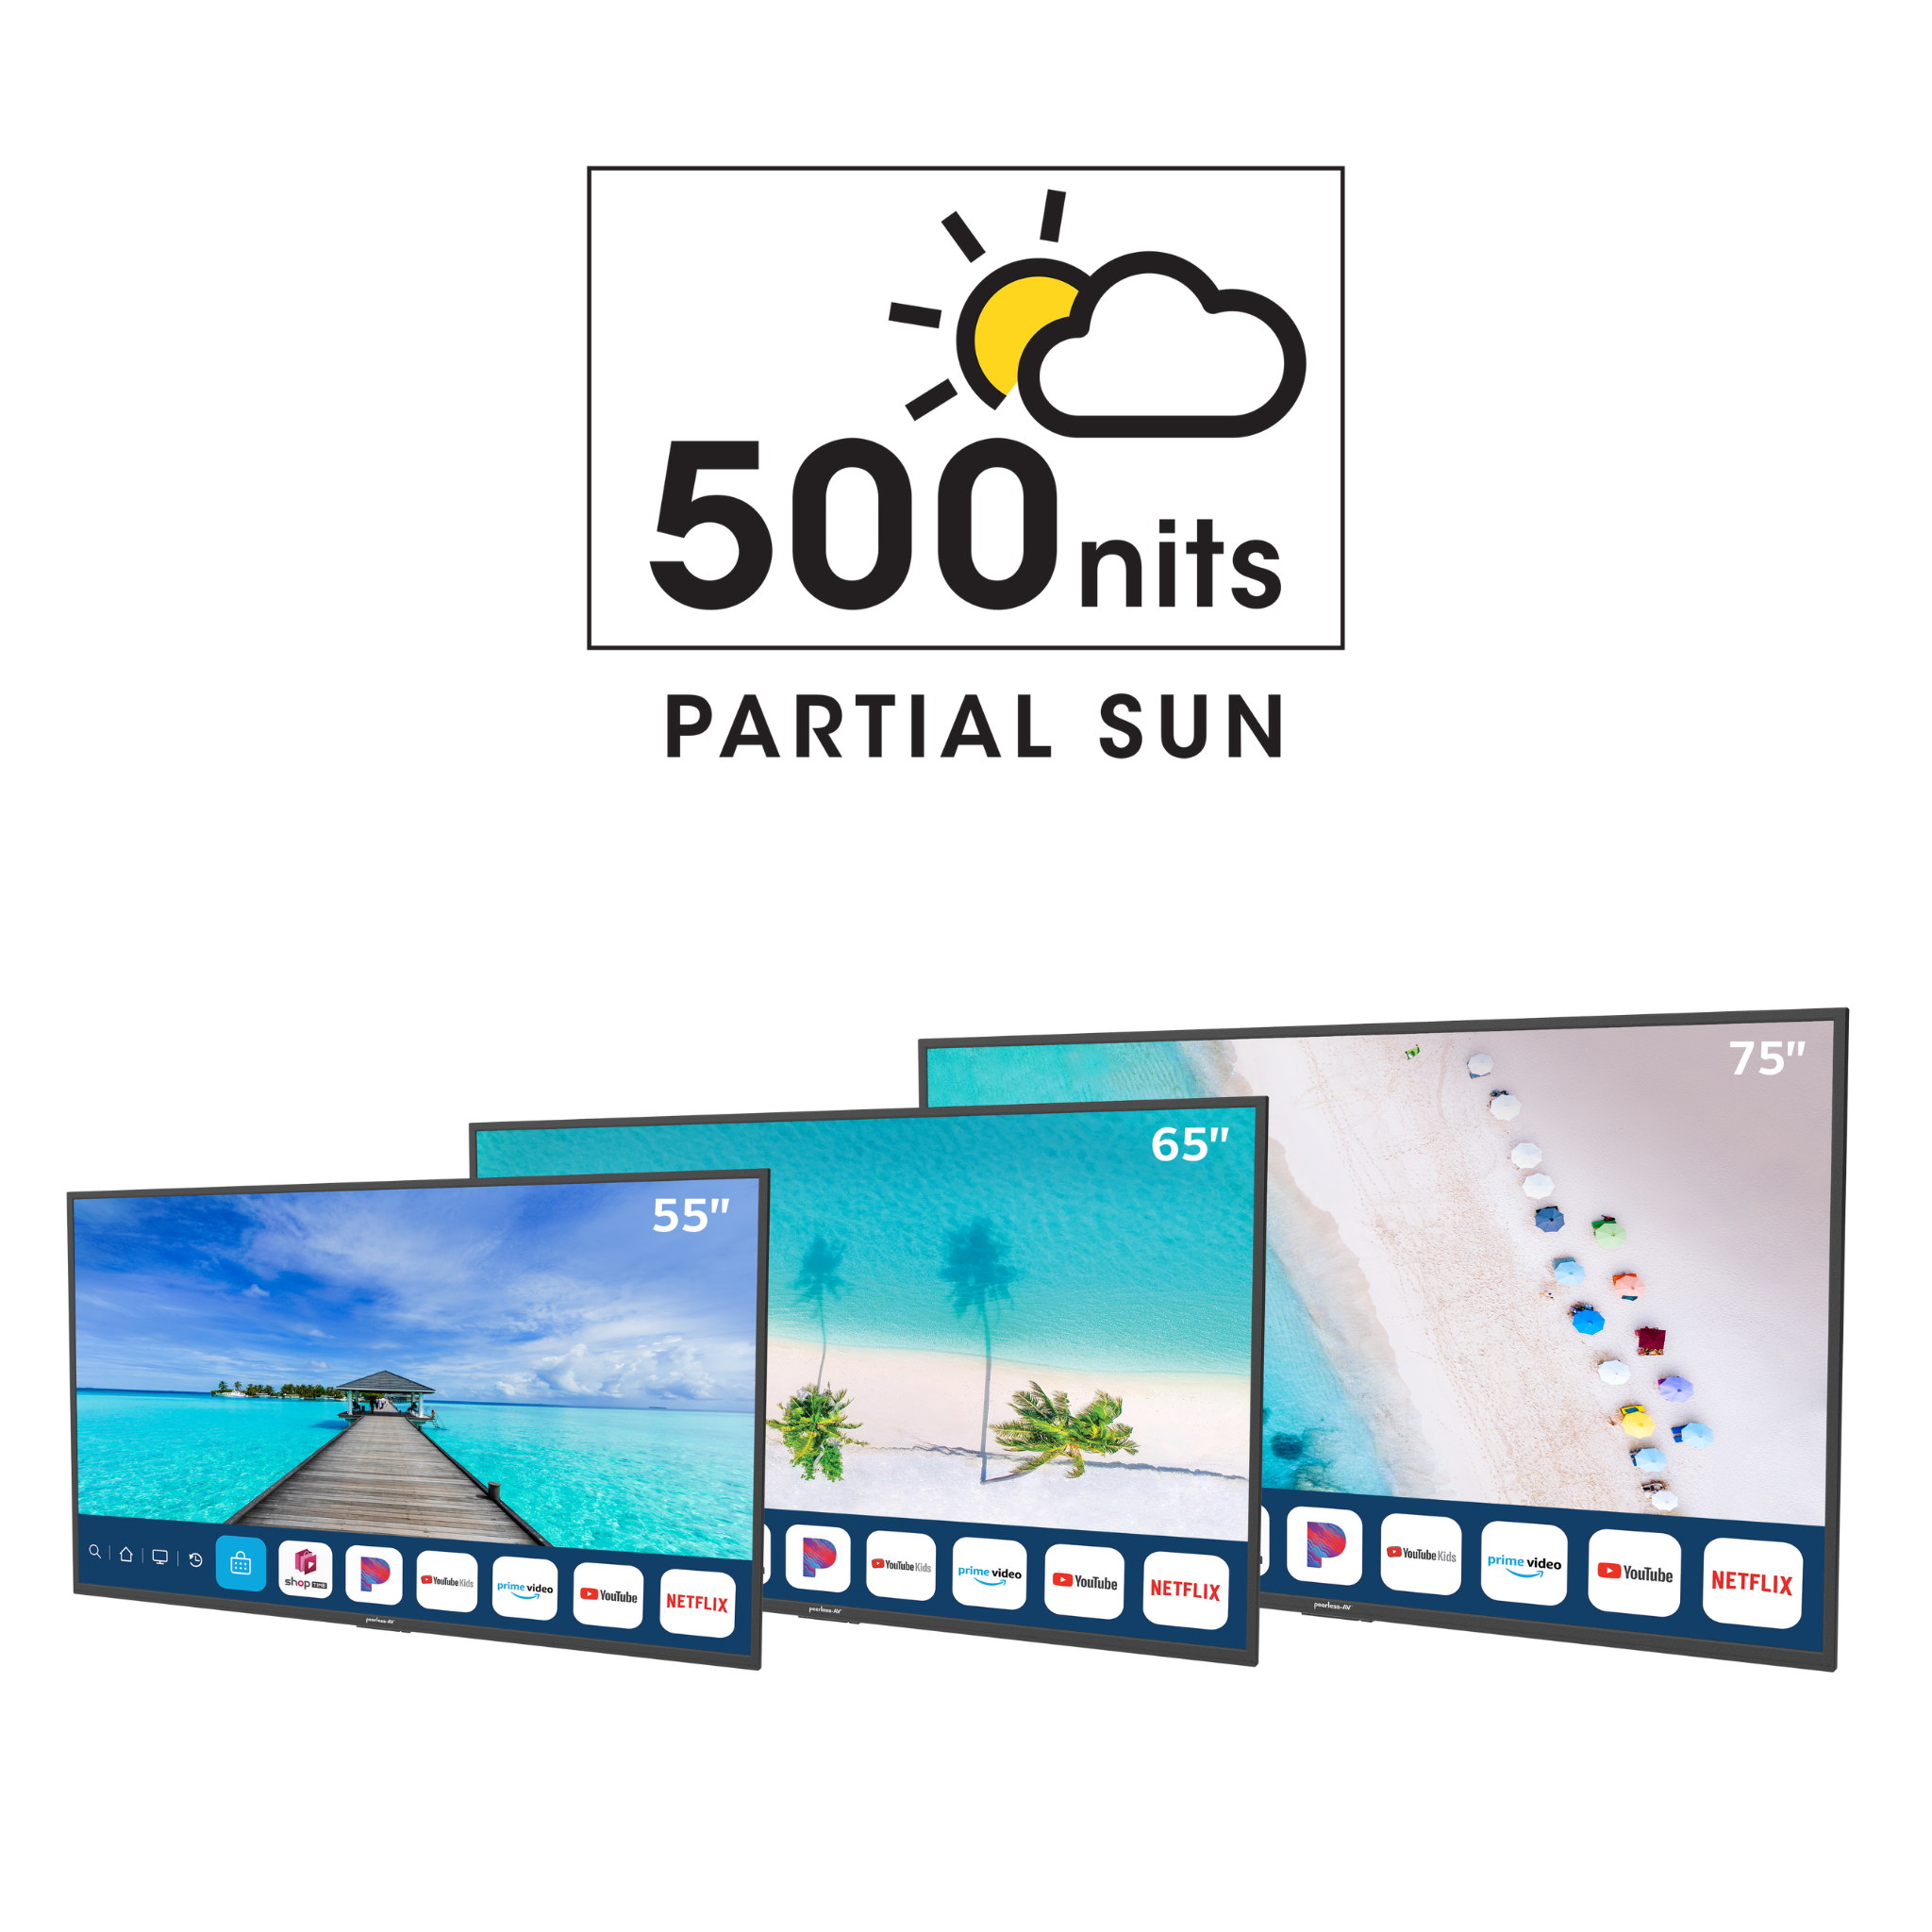 Neptune™ Partial Sun Outdoor Smart TVs